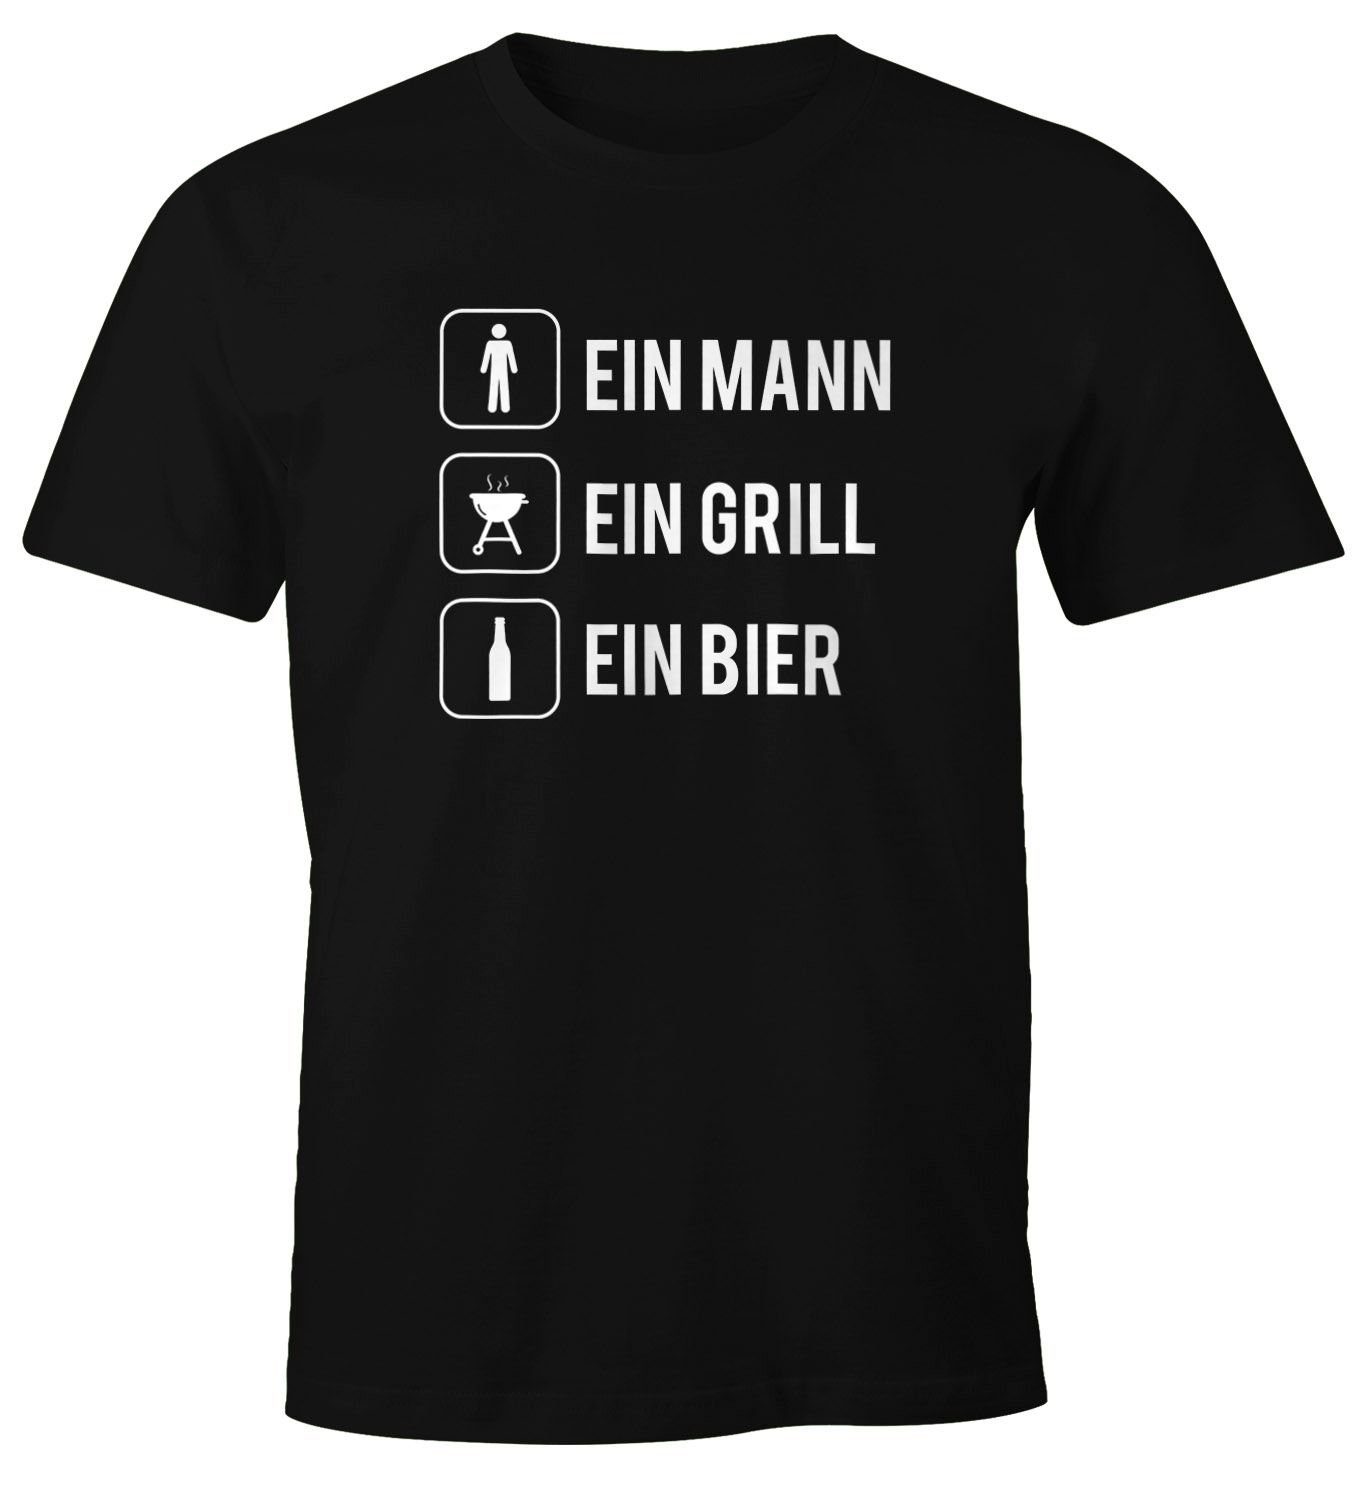 MoonWorks Print-Shirt Herren T-Shirt Ein Mann ein Grill ein Bier Fun-Shirt Spruchshirt Lustig Party Saufen Grillen Barbecue BBQ Fleisch Sommer Moonworks® mit Print